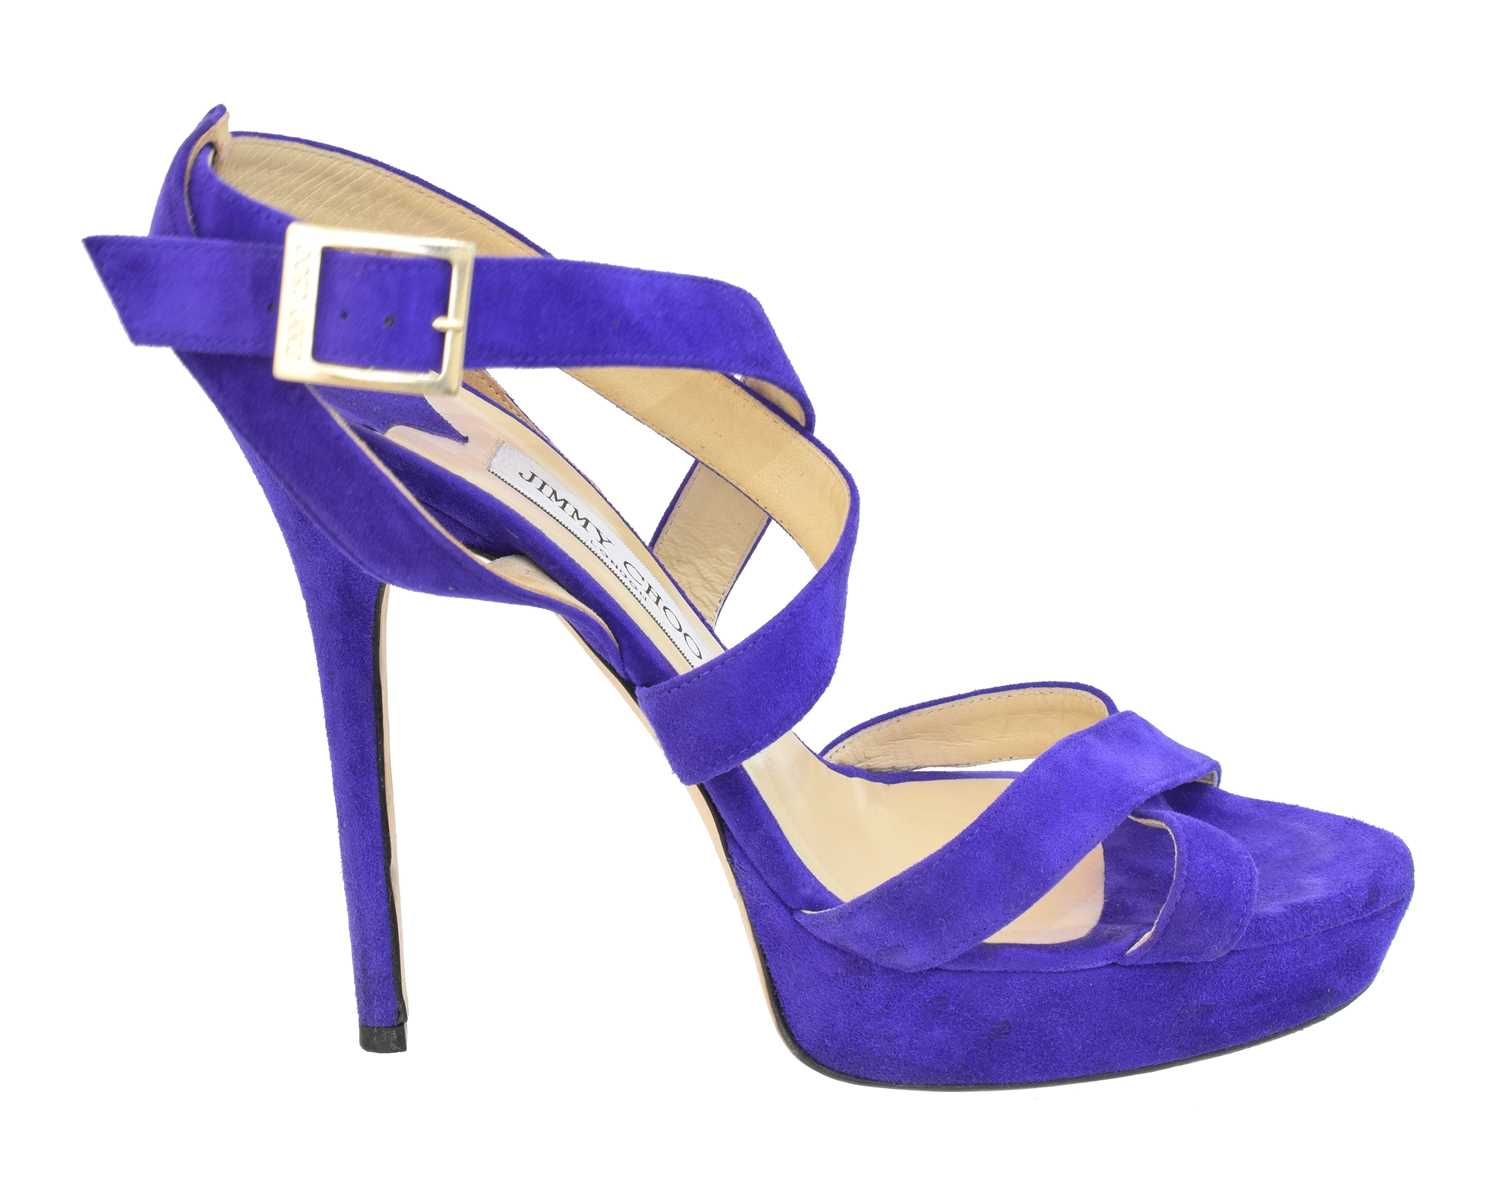 Lot 49 - A pair of Jimmy Choo 'Vamp' heels